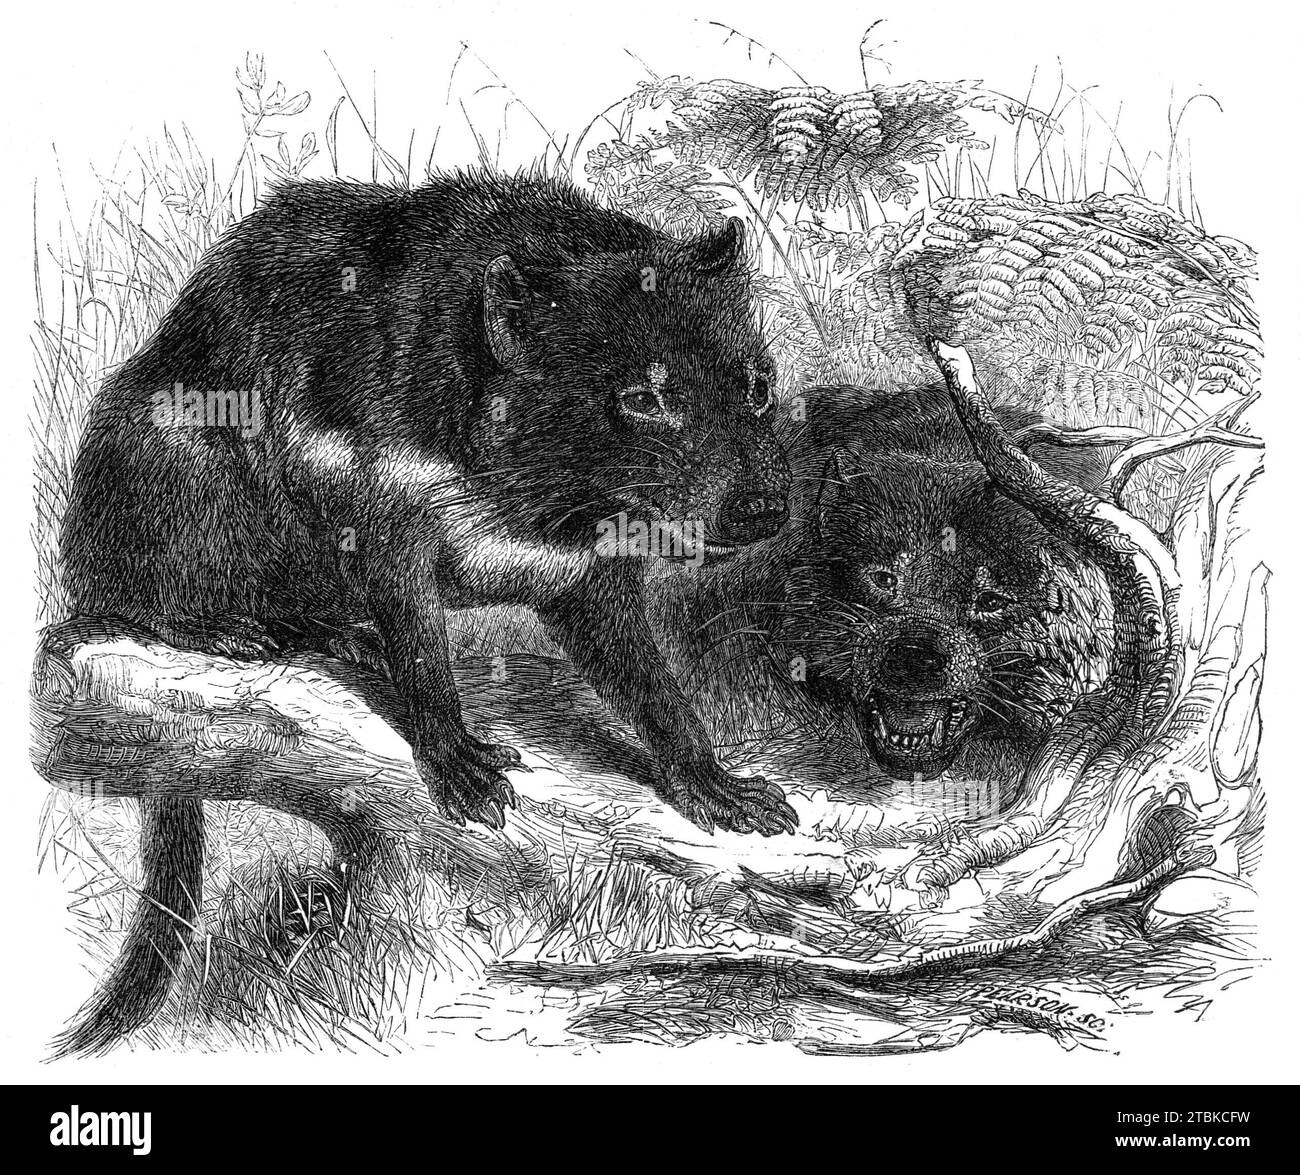 Ursine Dasyure oder Tasmanischer Teufel (Dasyurus ursinus), 1861. "...ein schönes Beispiel, das kürzlich der Sammlung der Zoological Society of London hinzugefügt wurde, wahrscheinlich das einzige Individuum dieser Art, das in Europa lebt. Sie gehört zur Gruppe der fleischfressenden Beuteltiere... und ist bemerkenswert für ihre wilde und unzähmbare Disposition, aus der sie von den Siedlern in Tasmanien den Namen des „Teufels“ oder „einheimischer Teufel“ erworben hat. Seine etwas hässliche Form, und sein schwarzes, unattraktives Aussehen, könnte vielleicht... haben dazu beigetragen, dass diese Bezeichnung ihr verliehen wurde. "'diese Anim Stockfoto